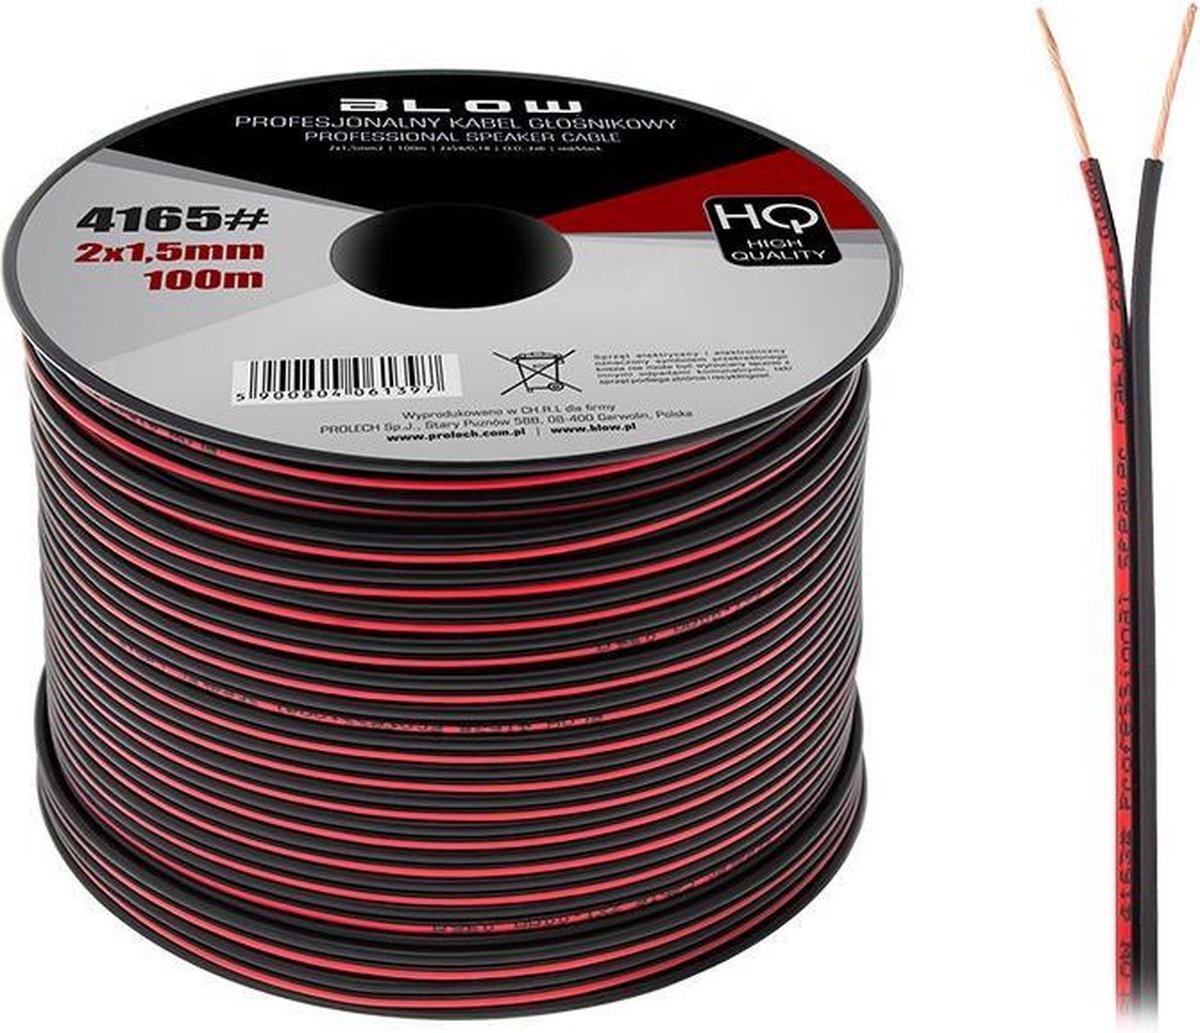 Cable haut-parleurs/Enceintes HQ 2 X 2,5 MM² 100 M